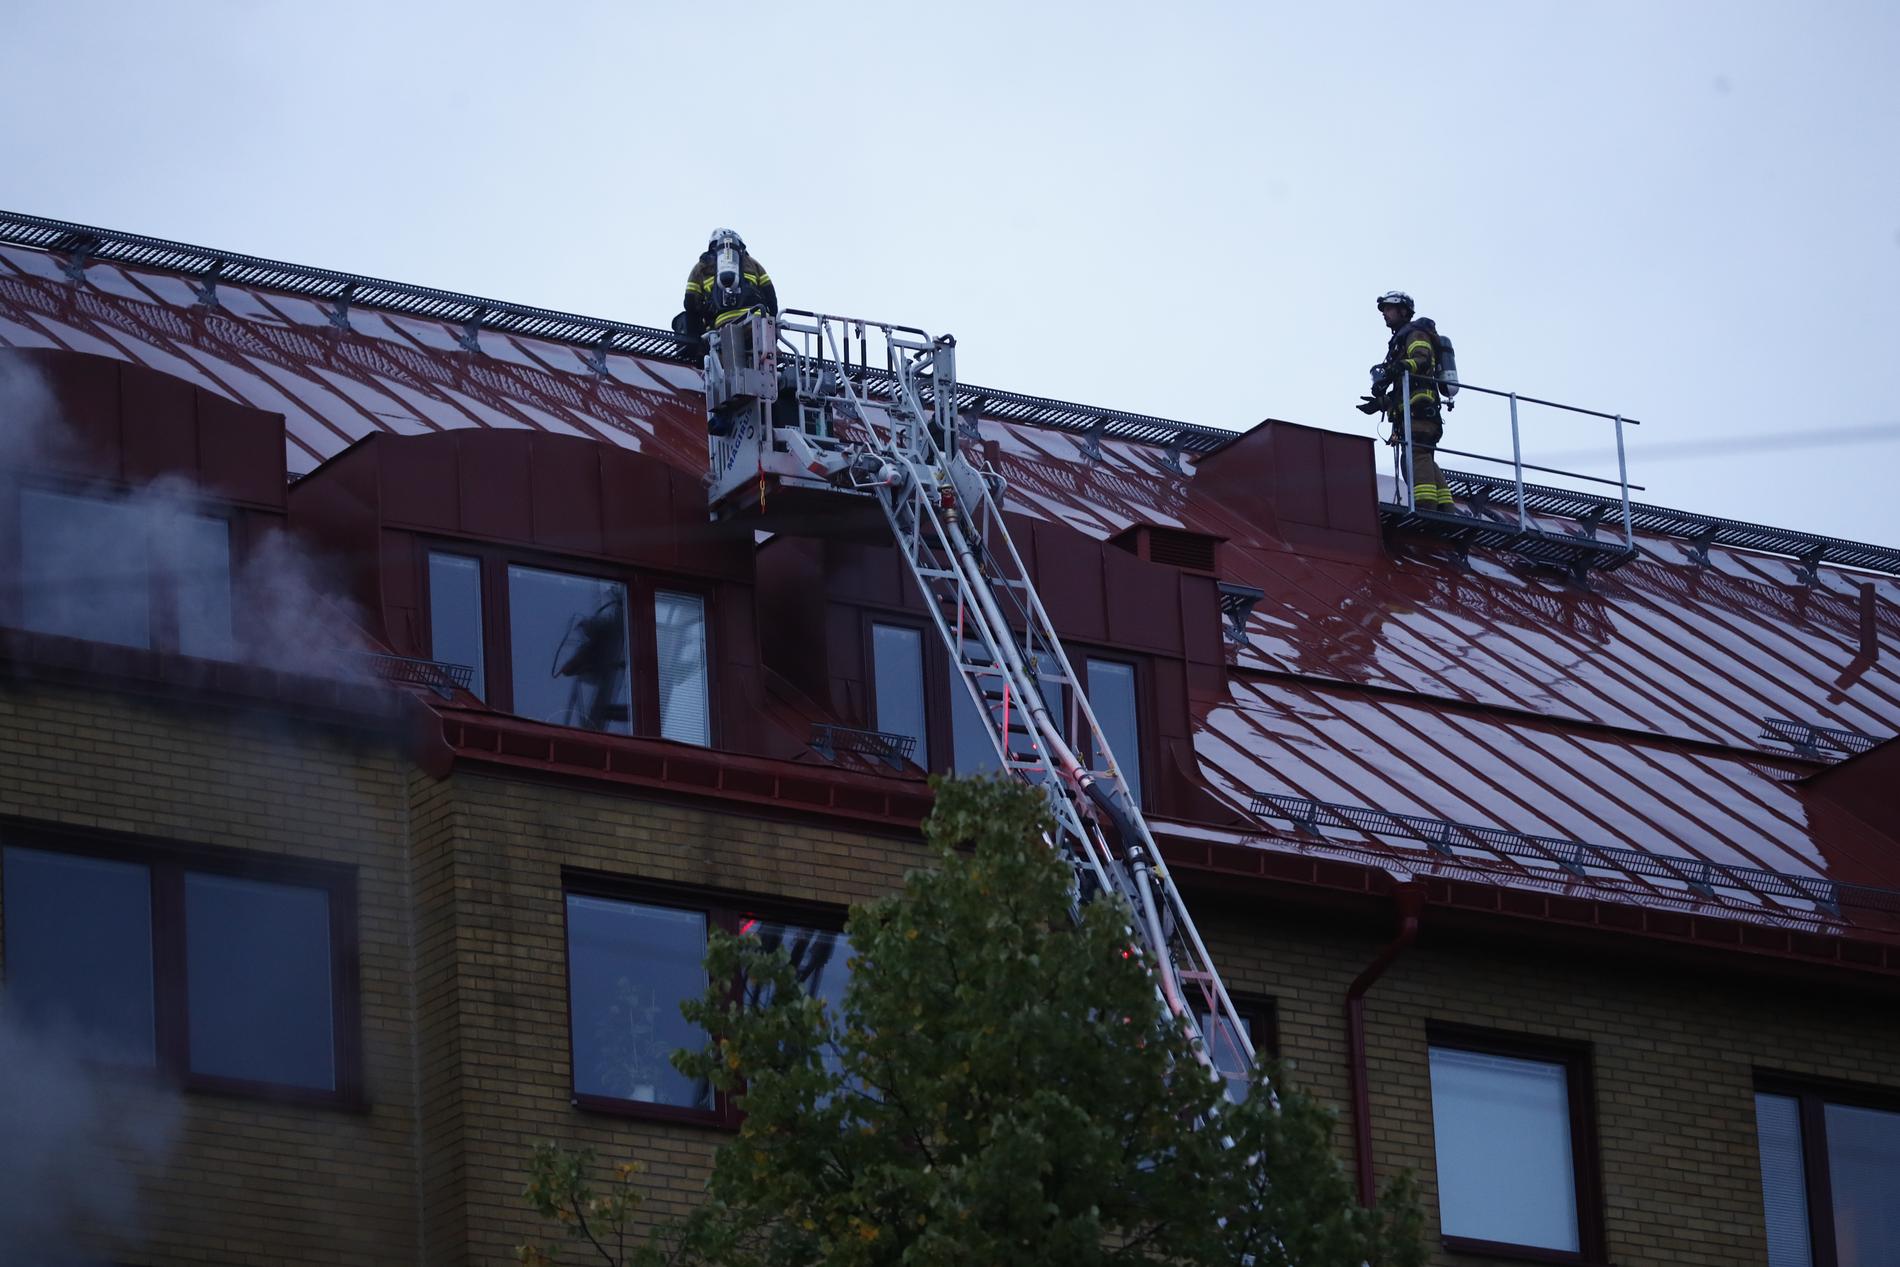 Alla boende har evakuerats ur huset i Annedal i Göteborg där explosionen inträffade på tisdagsmorgonen.